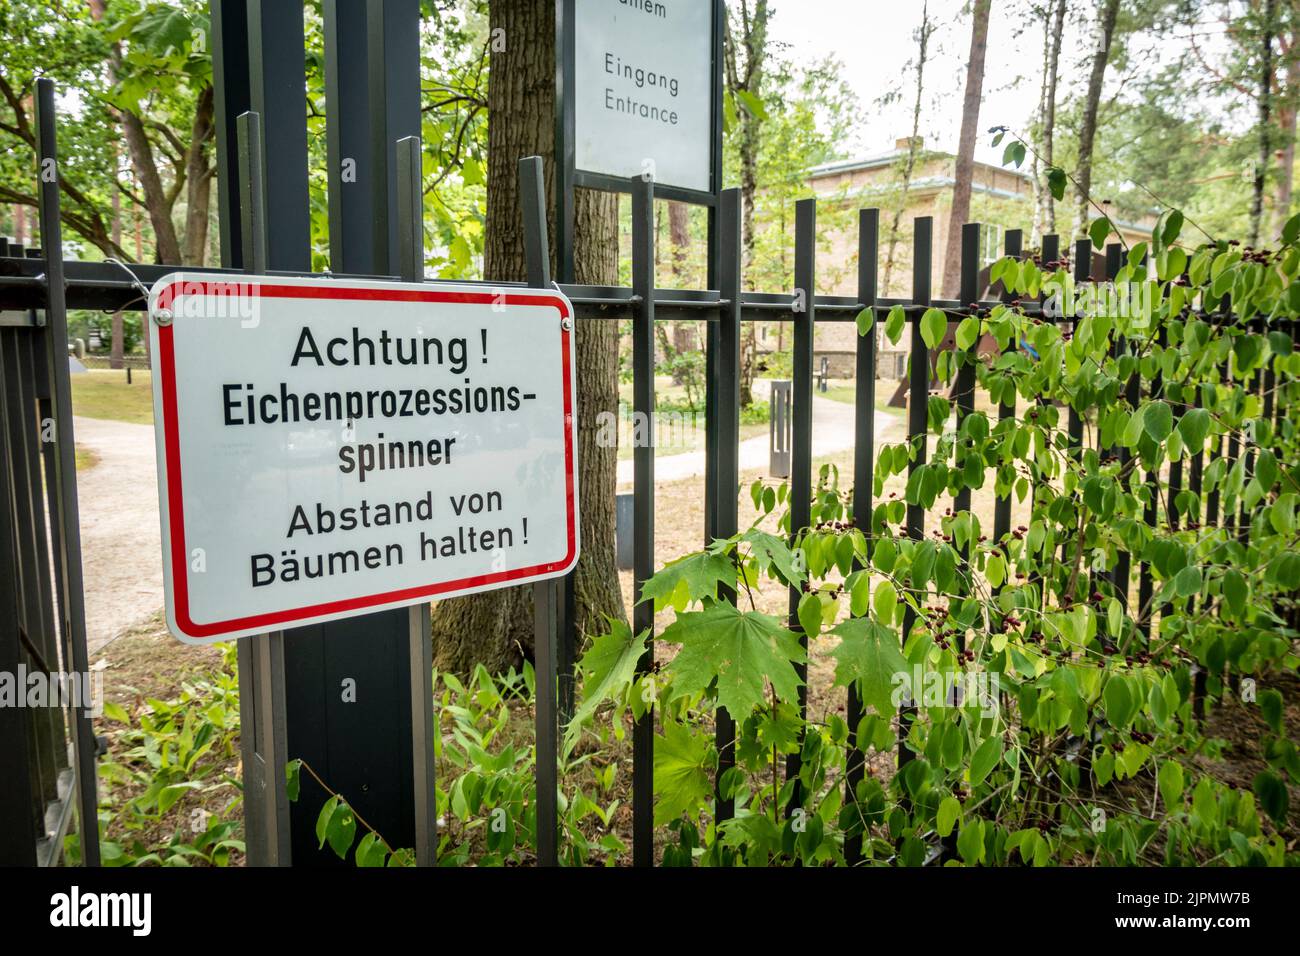 Warnung vor Eichenprozessionspinner, Grunewald, Berlino, Deutschland Foto Stock